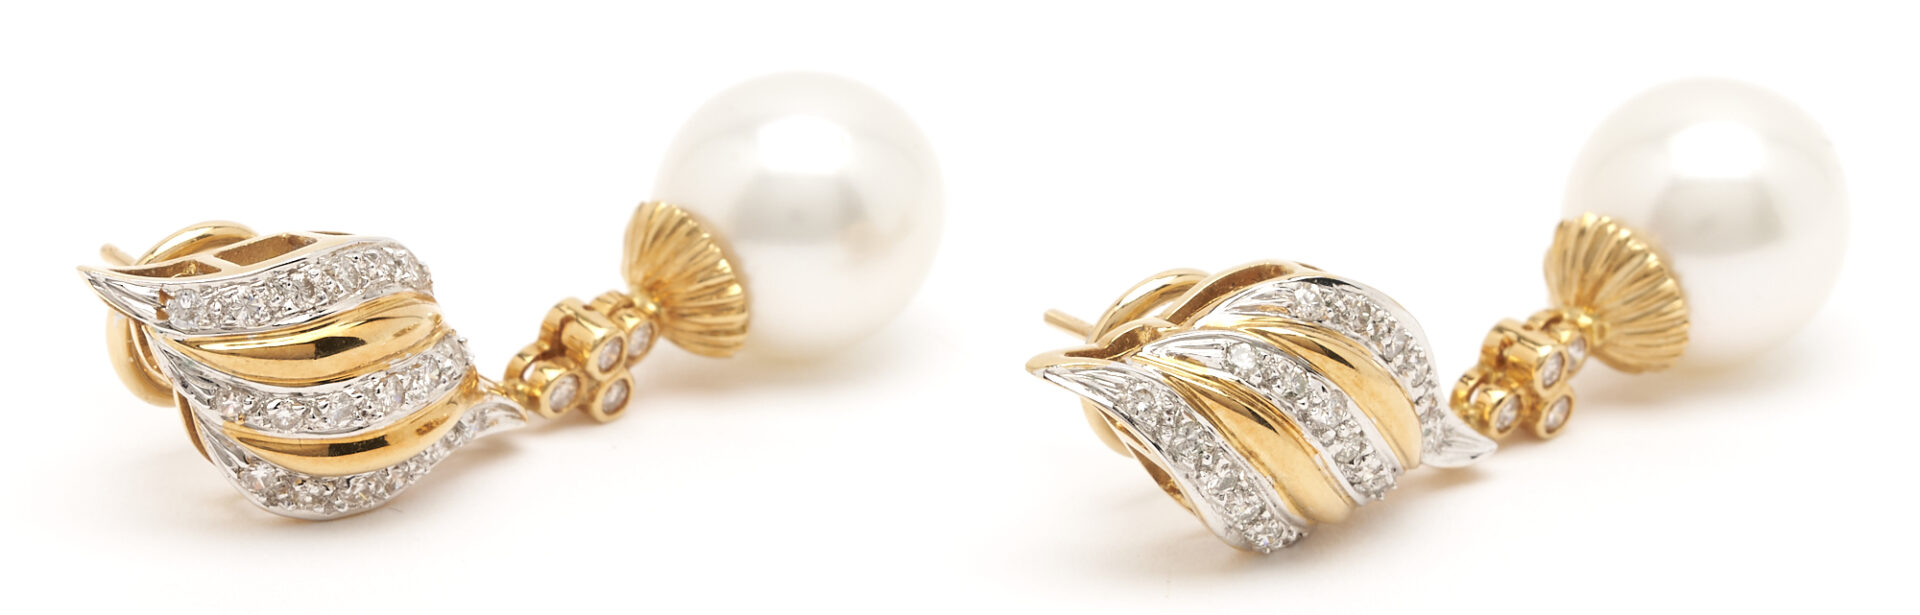 Lot 911: 18K Diamond & Pearl Earrings